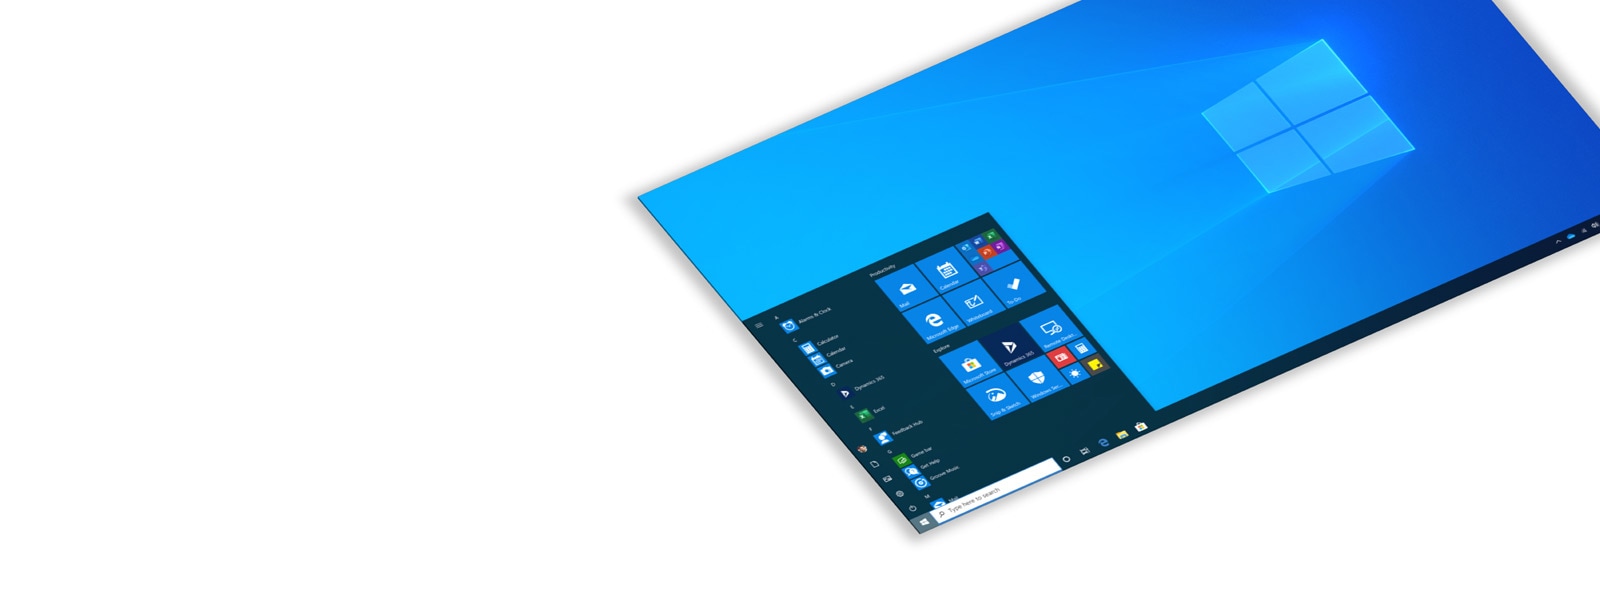 Vinklet skjermbilde av Windows 10 Pro-bakgrunn og startmeny